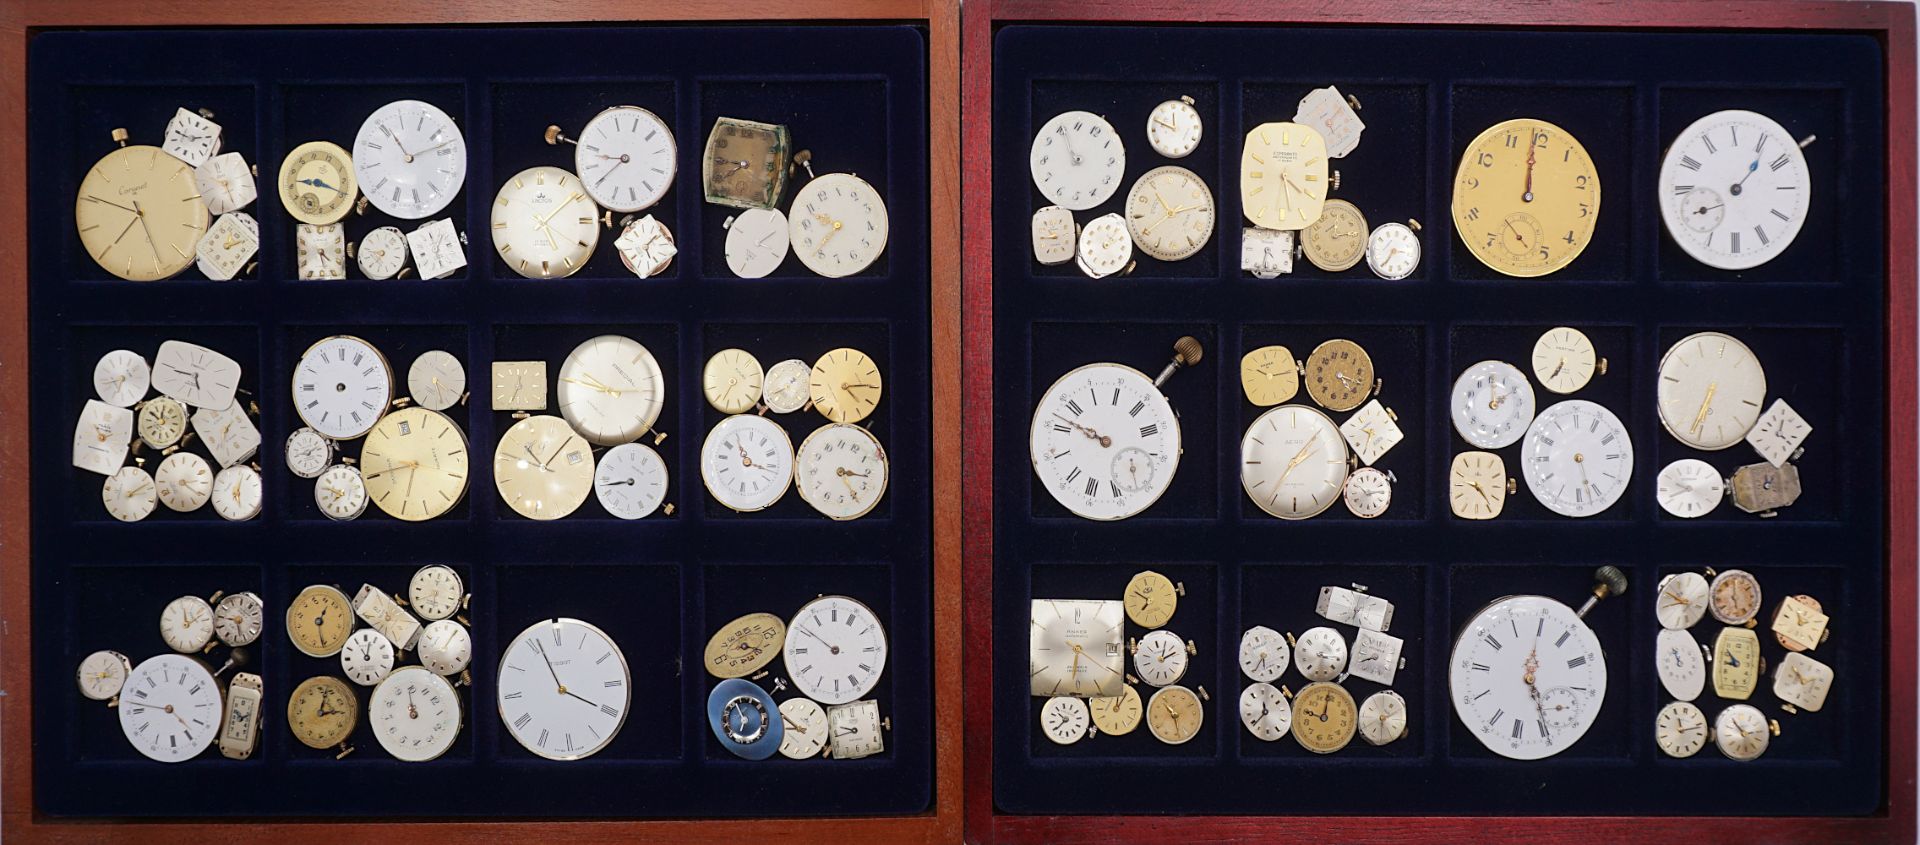 1 Konv. Uhrwerke für Taschen-/ Armbanduhren z.T. um 1900/ 20. Jh. in 4 Schatullen - Image 2 of 2